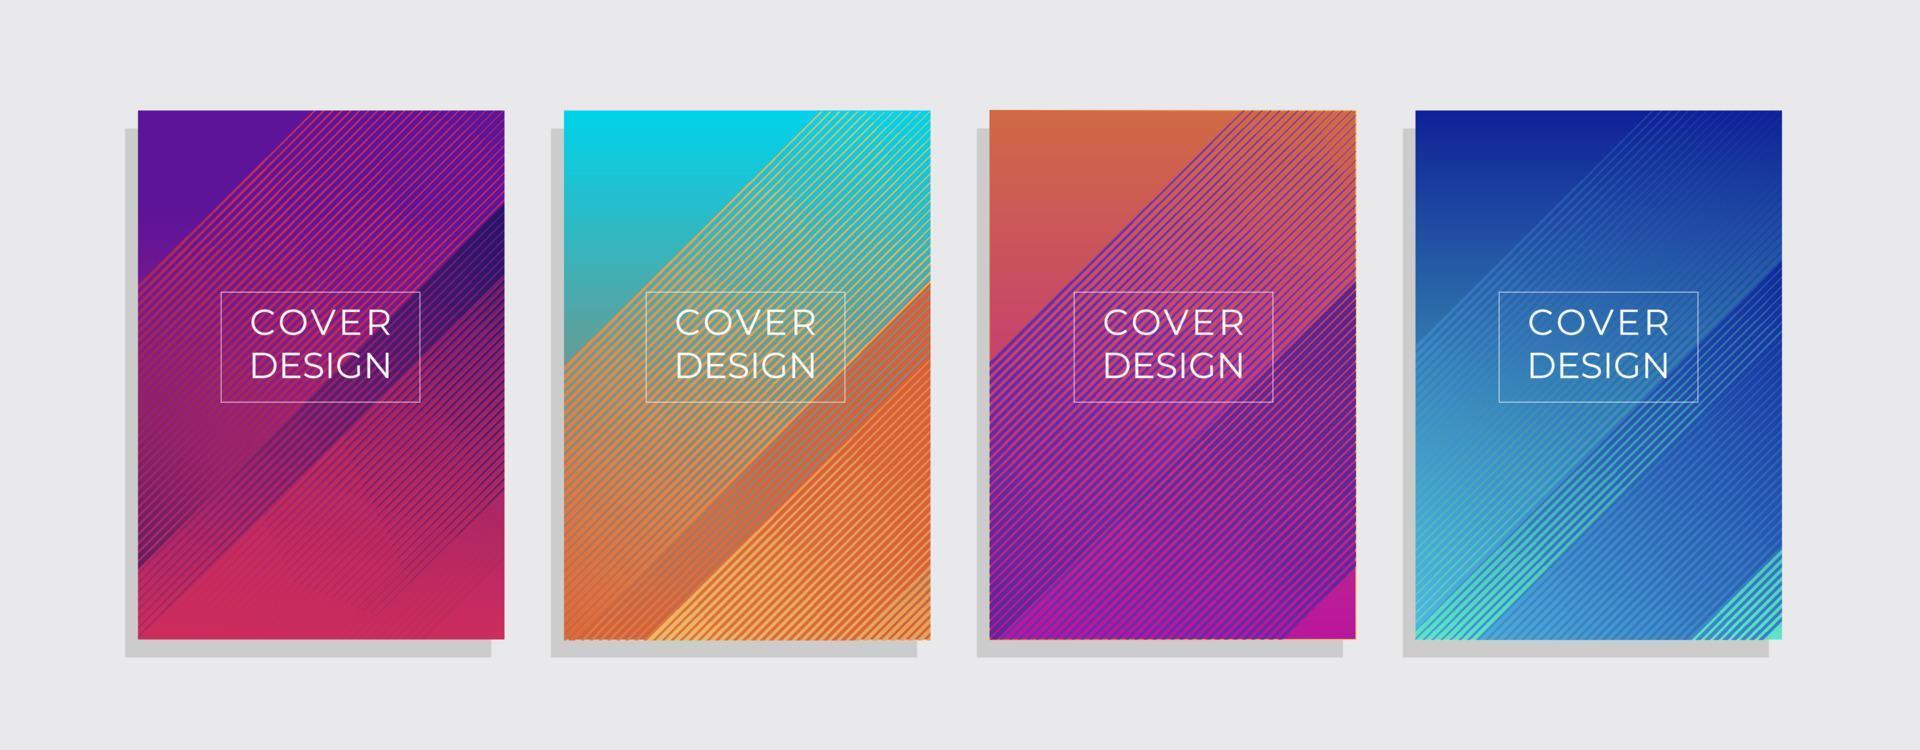 Set mit minimalem Cover-Design. bunter Verlaufsvektorhintergrund. modernes Vorlagendesign für Cover oder Web vektor